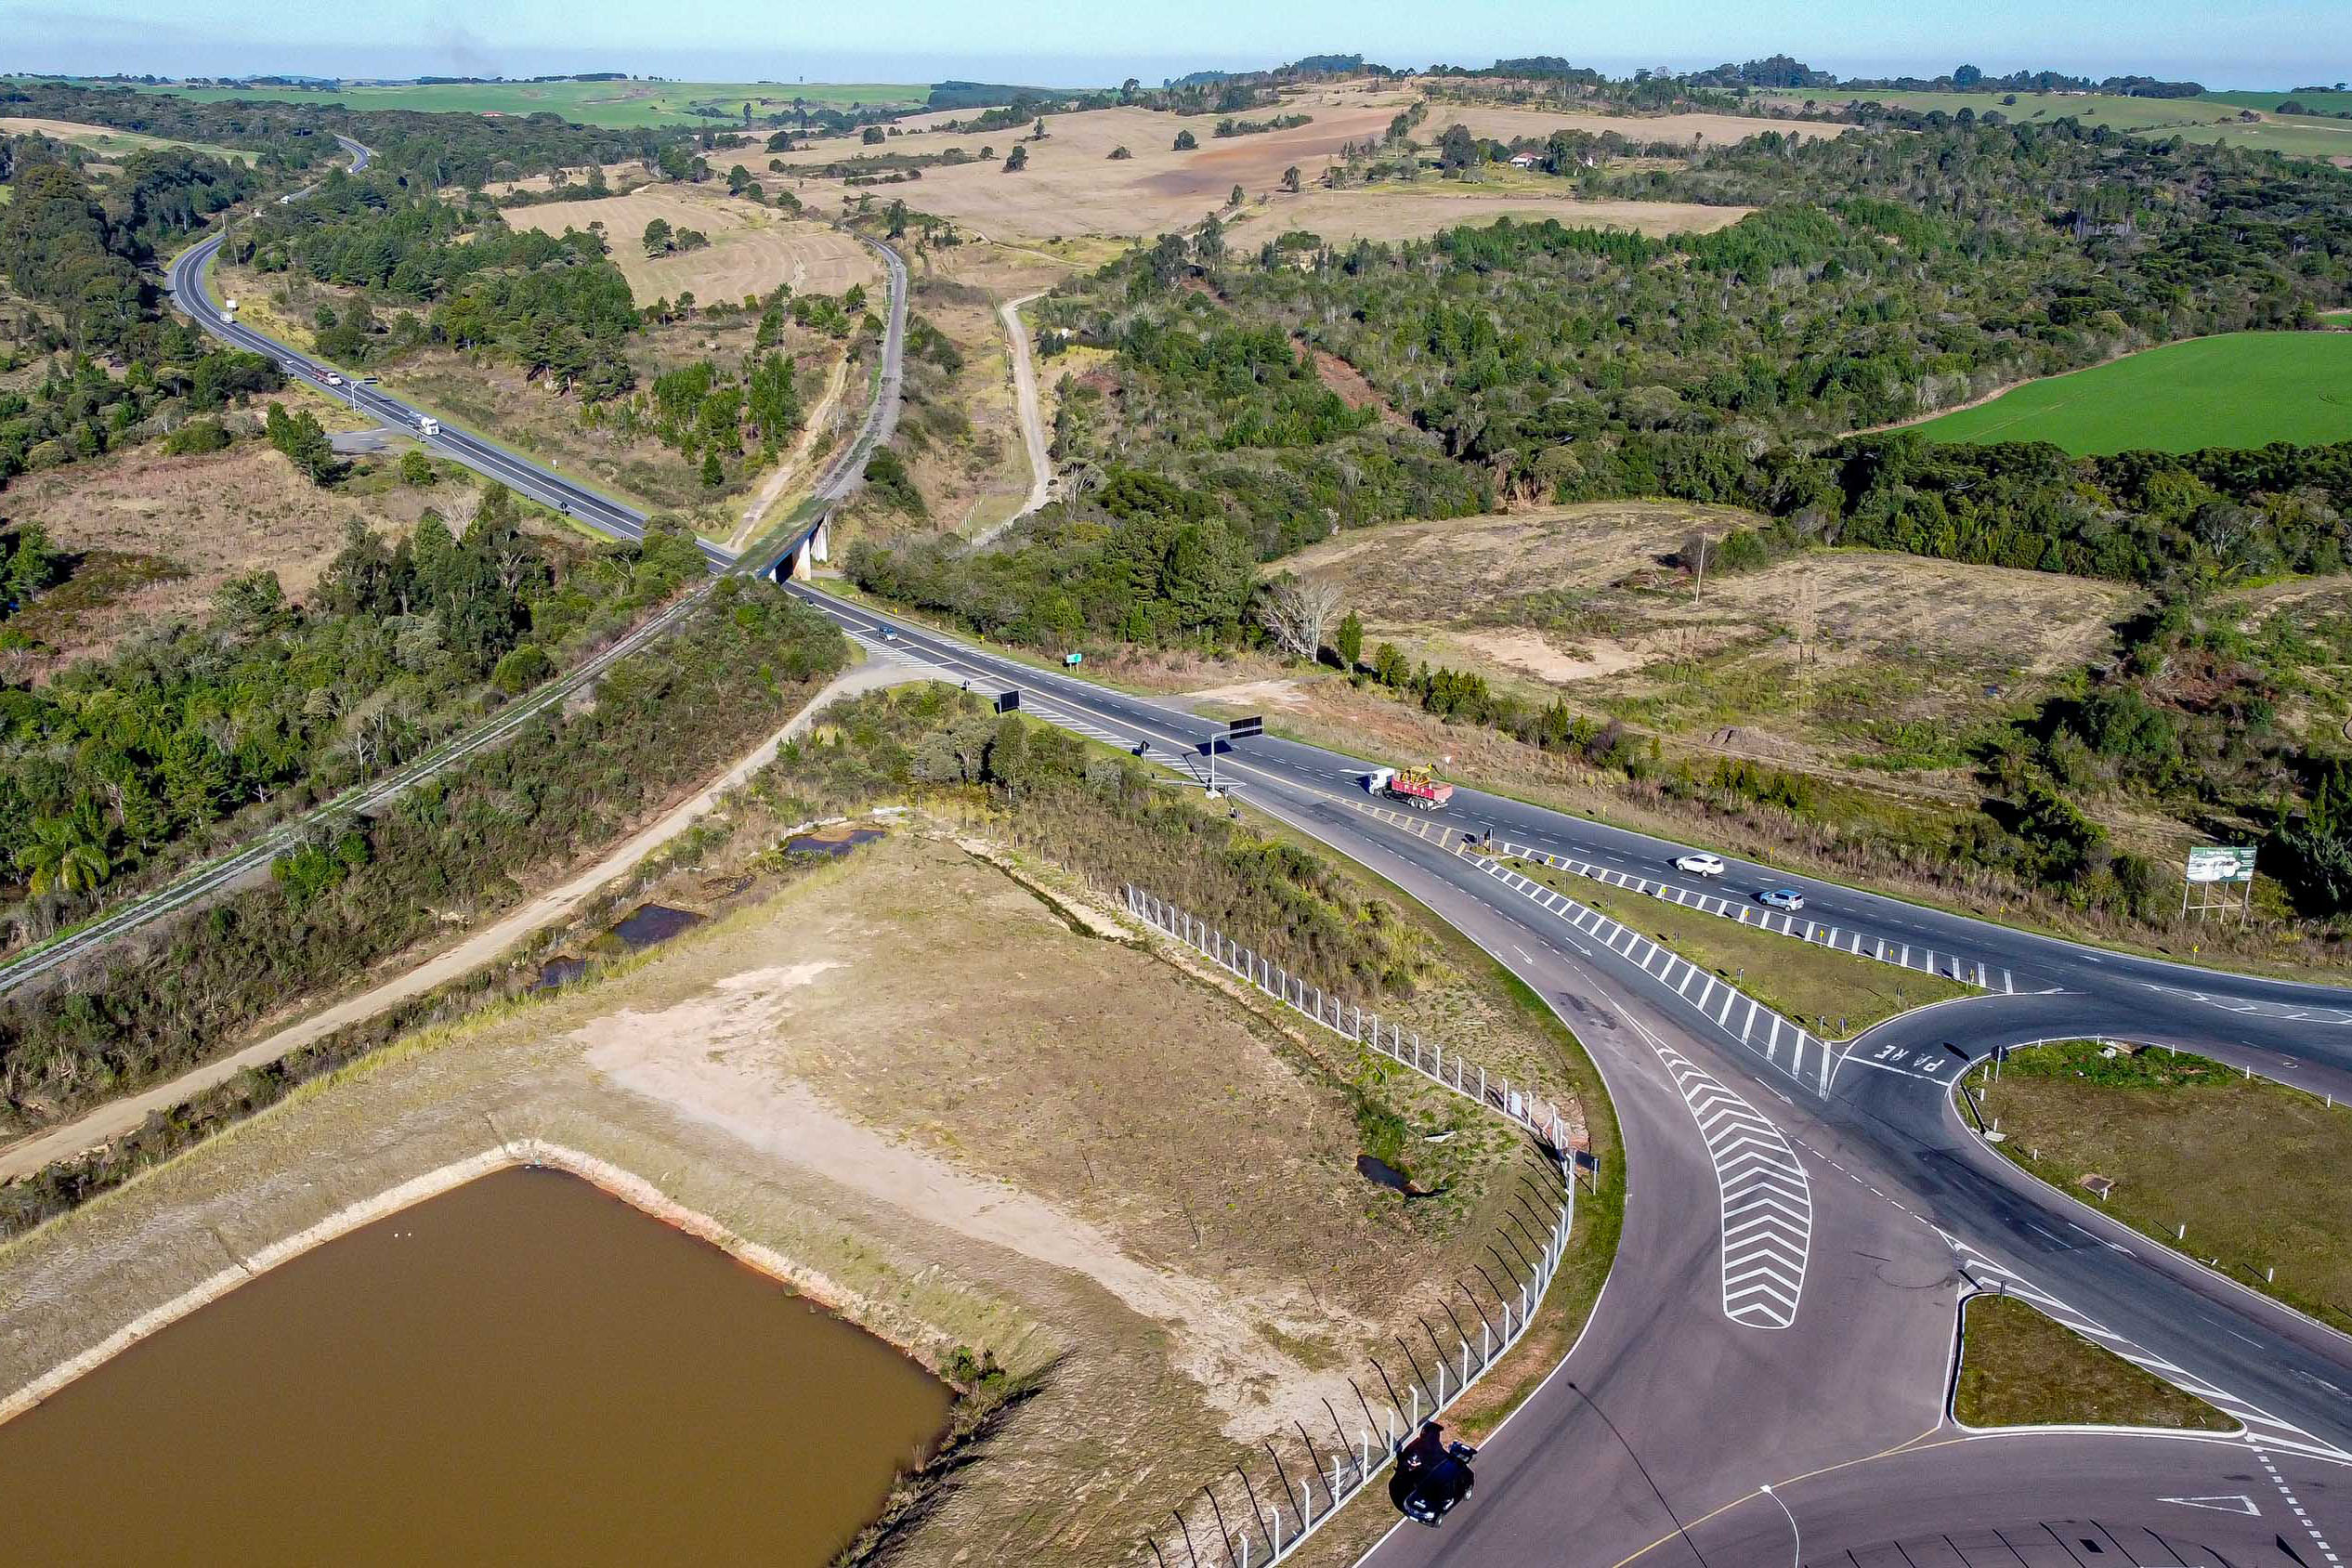 Leilão do 1º lote das novas concessões rodoviárias do Paraná será na próxima semana